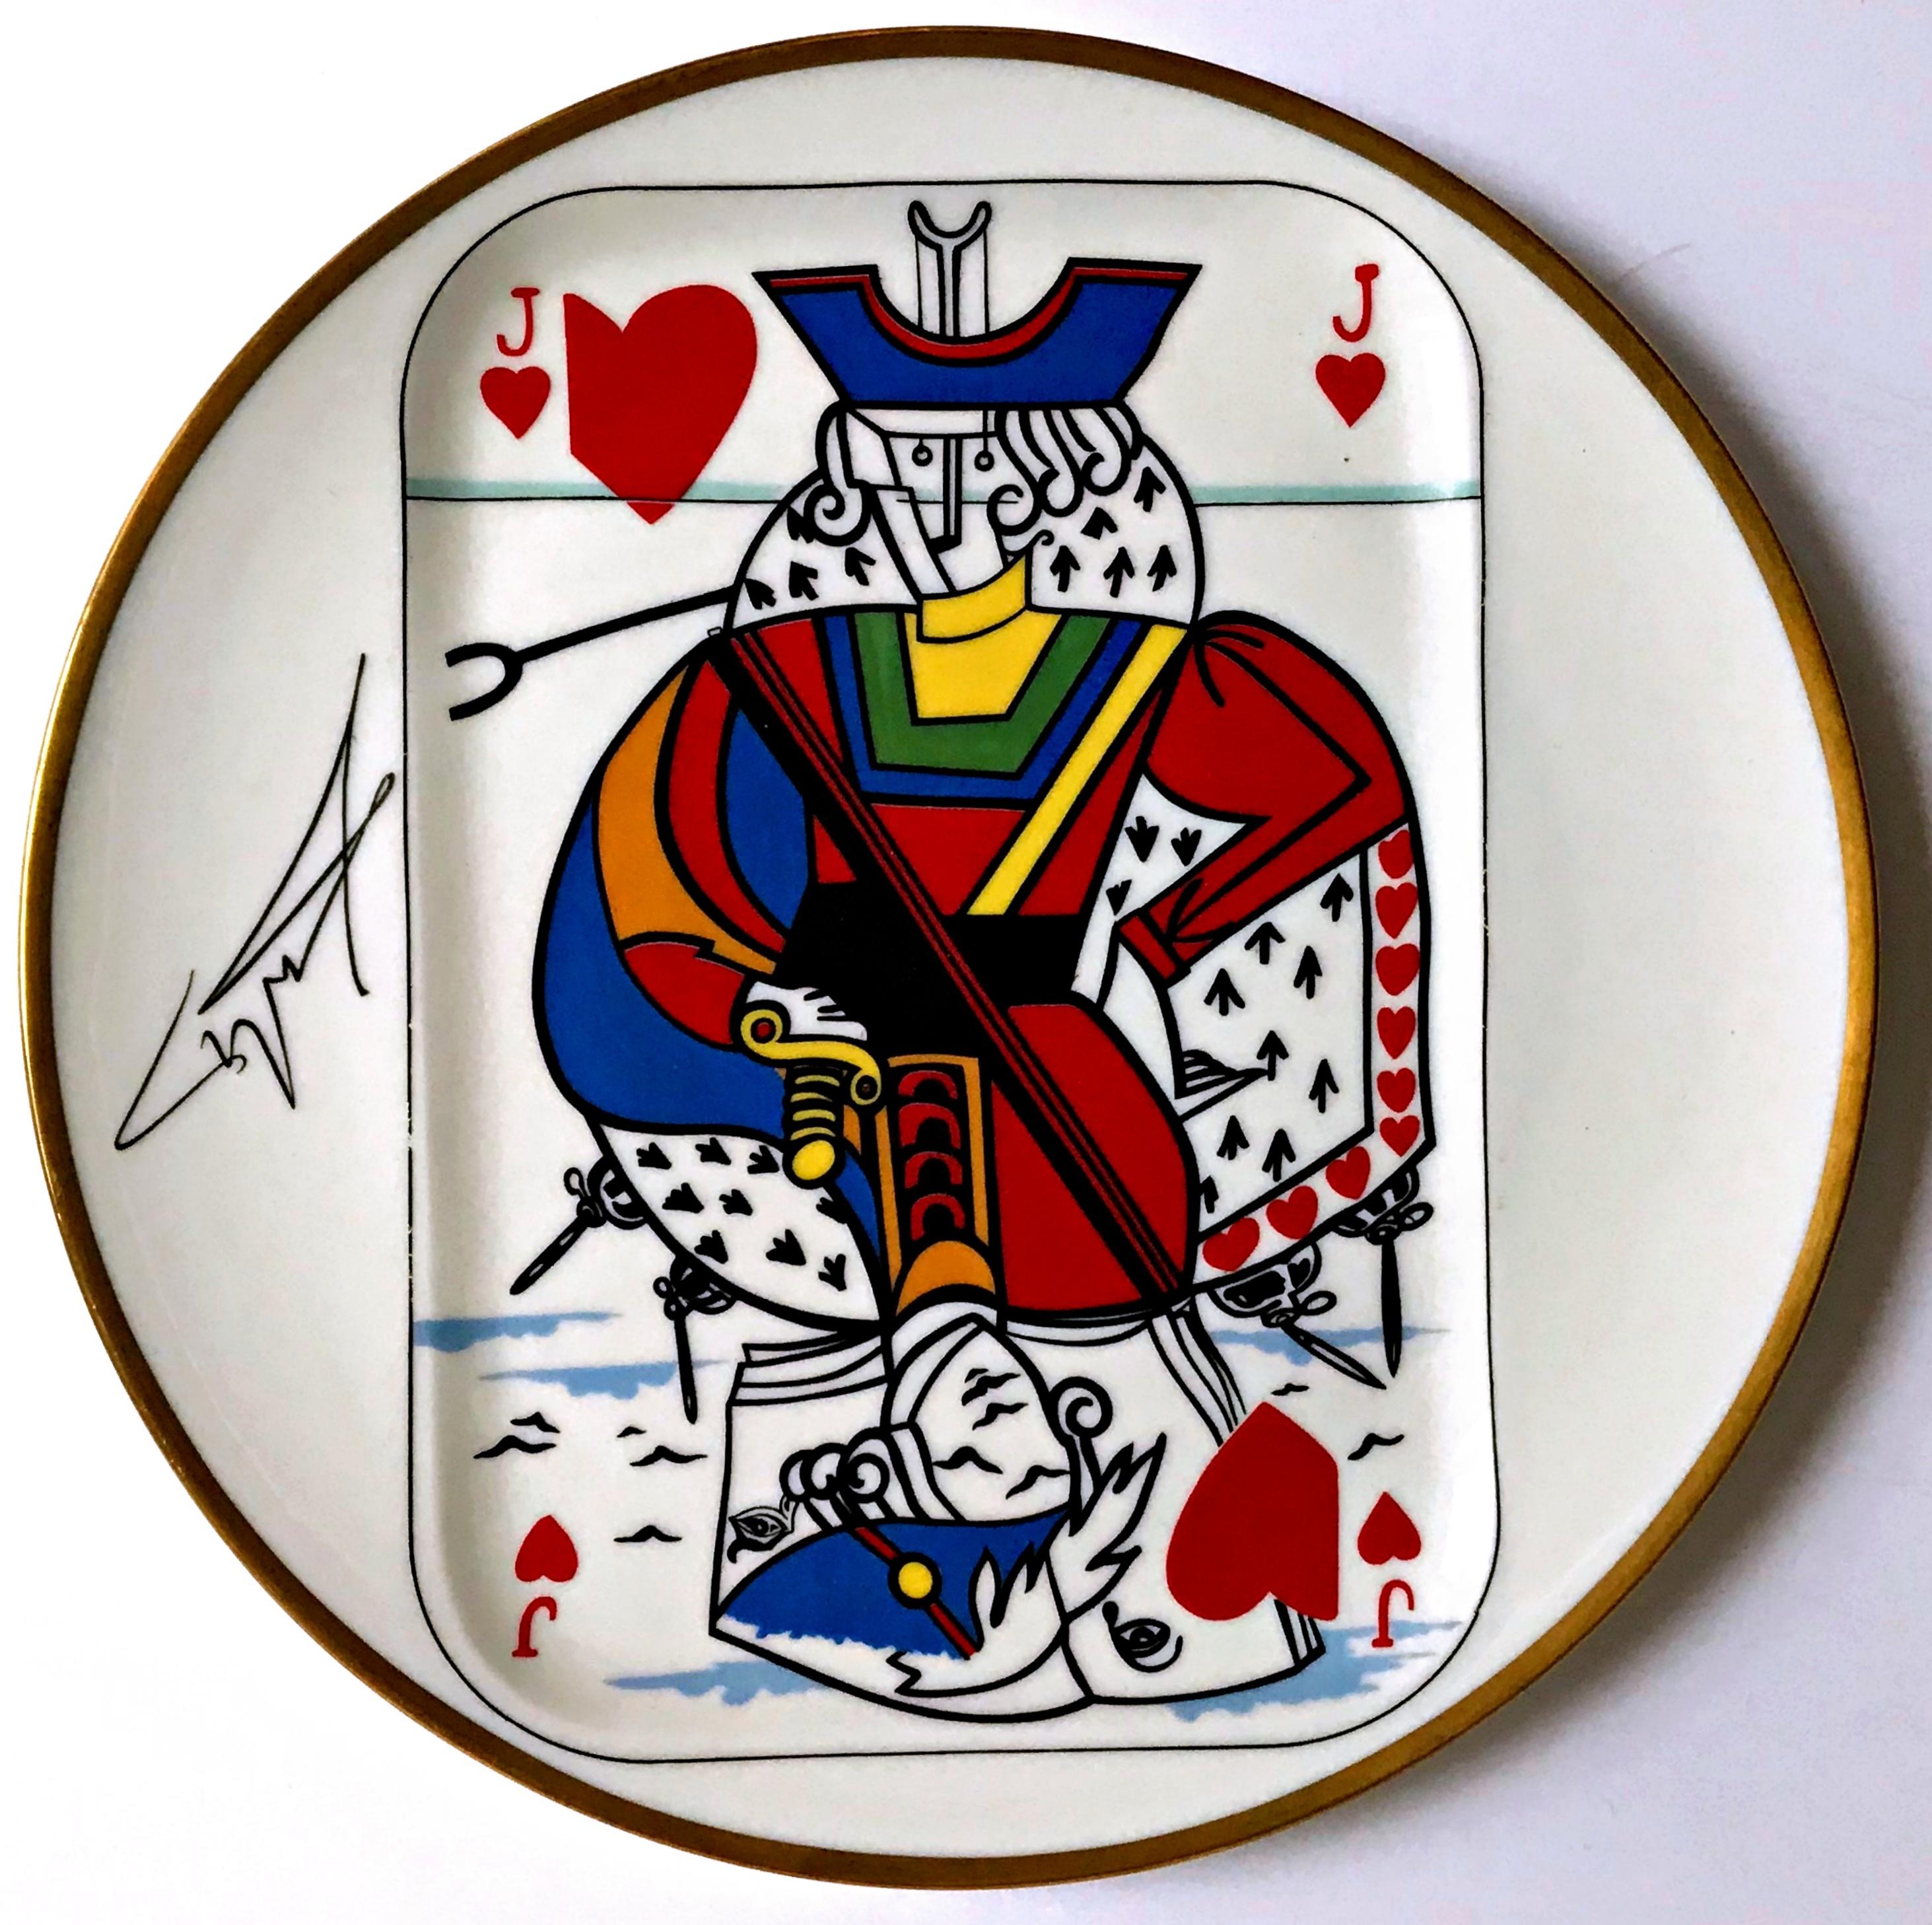 Jack of Hearts – Porzellanteller in limitierter Auflage, hergestellt in Frankreich 